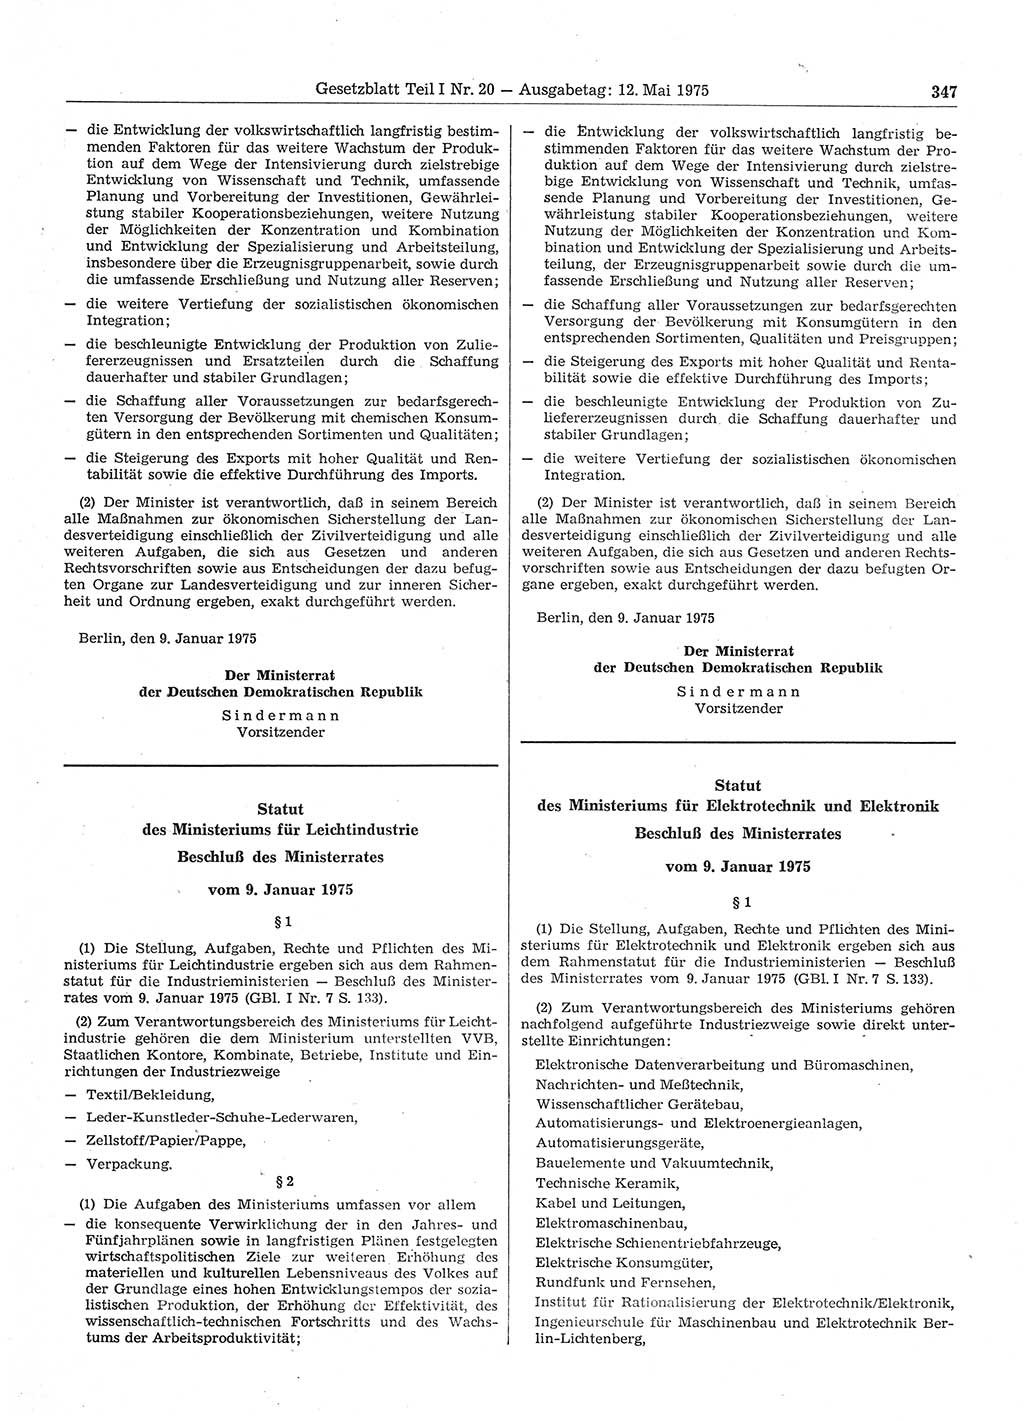 Gesetzblatt (GBl.) der Deutschen Demokratischen Republik (DDR) Teil Ⅰ 1975, Seite 347 (GBl. DDR Ⅰ 1975, S. 347)